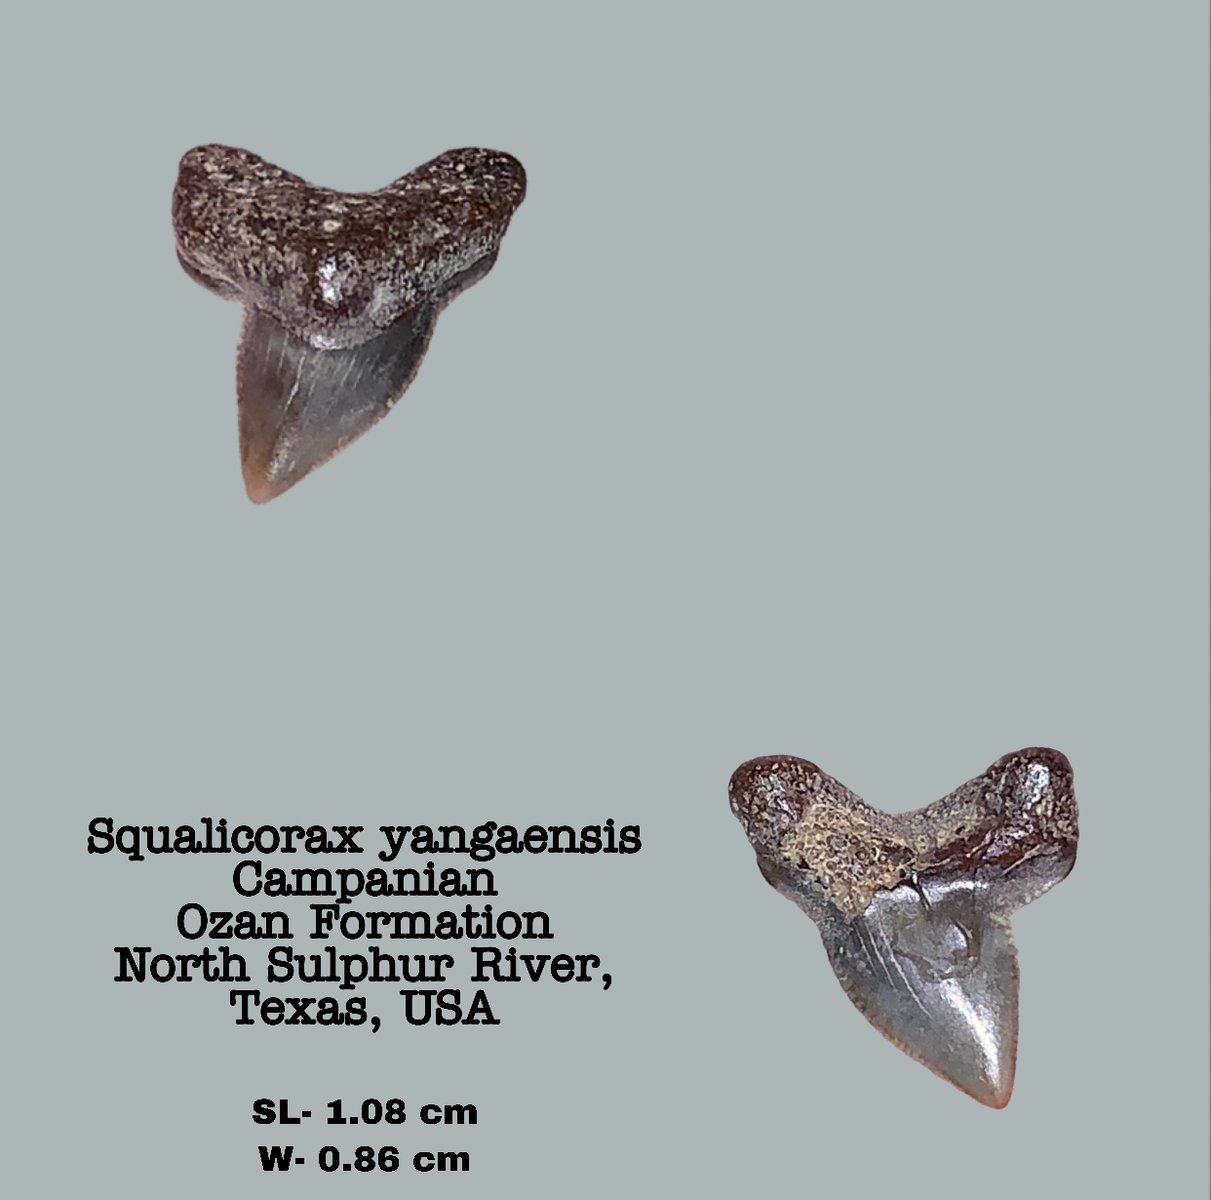 Squalicorax yangaensis